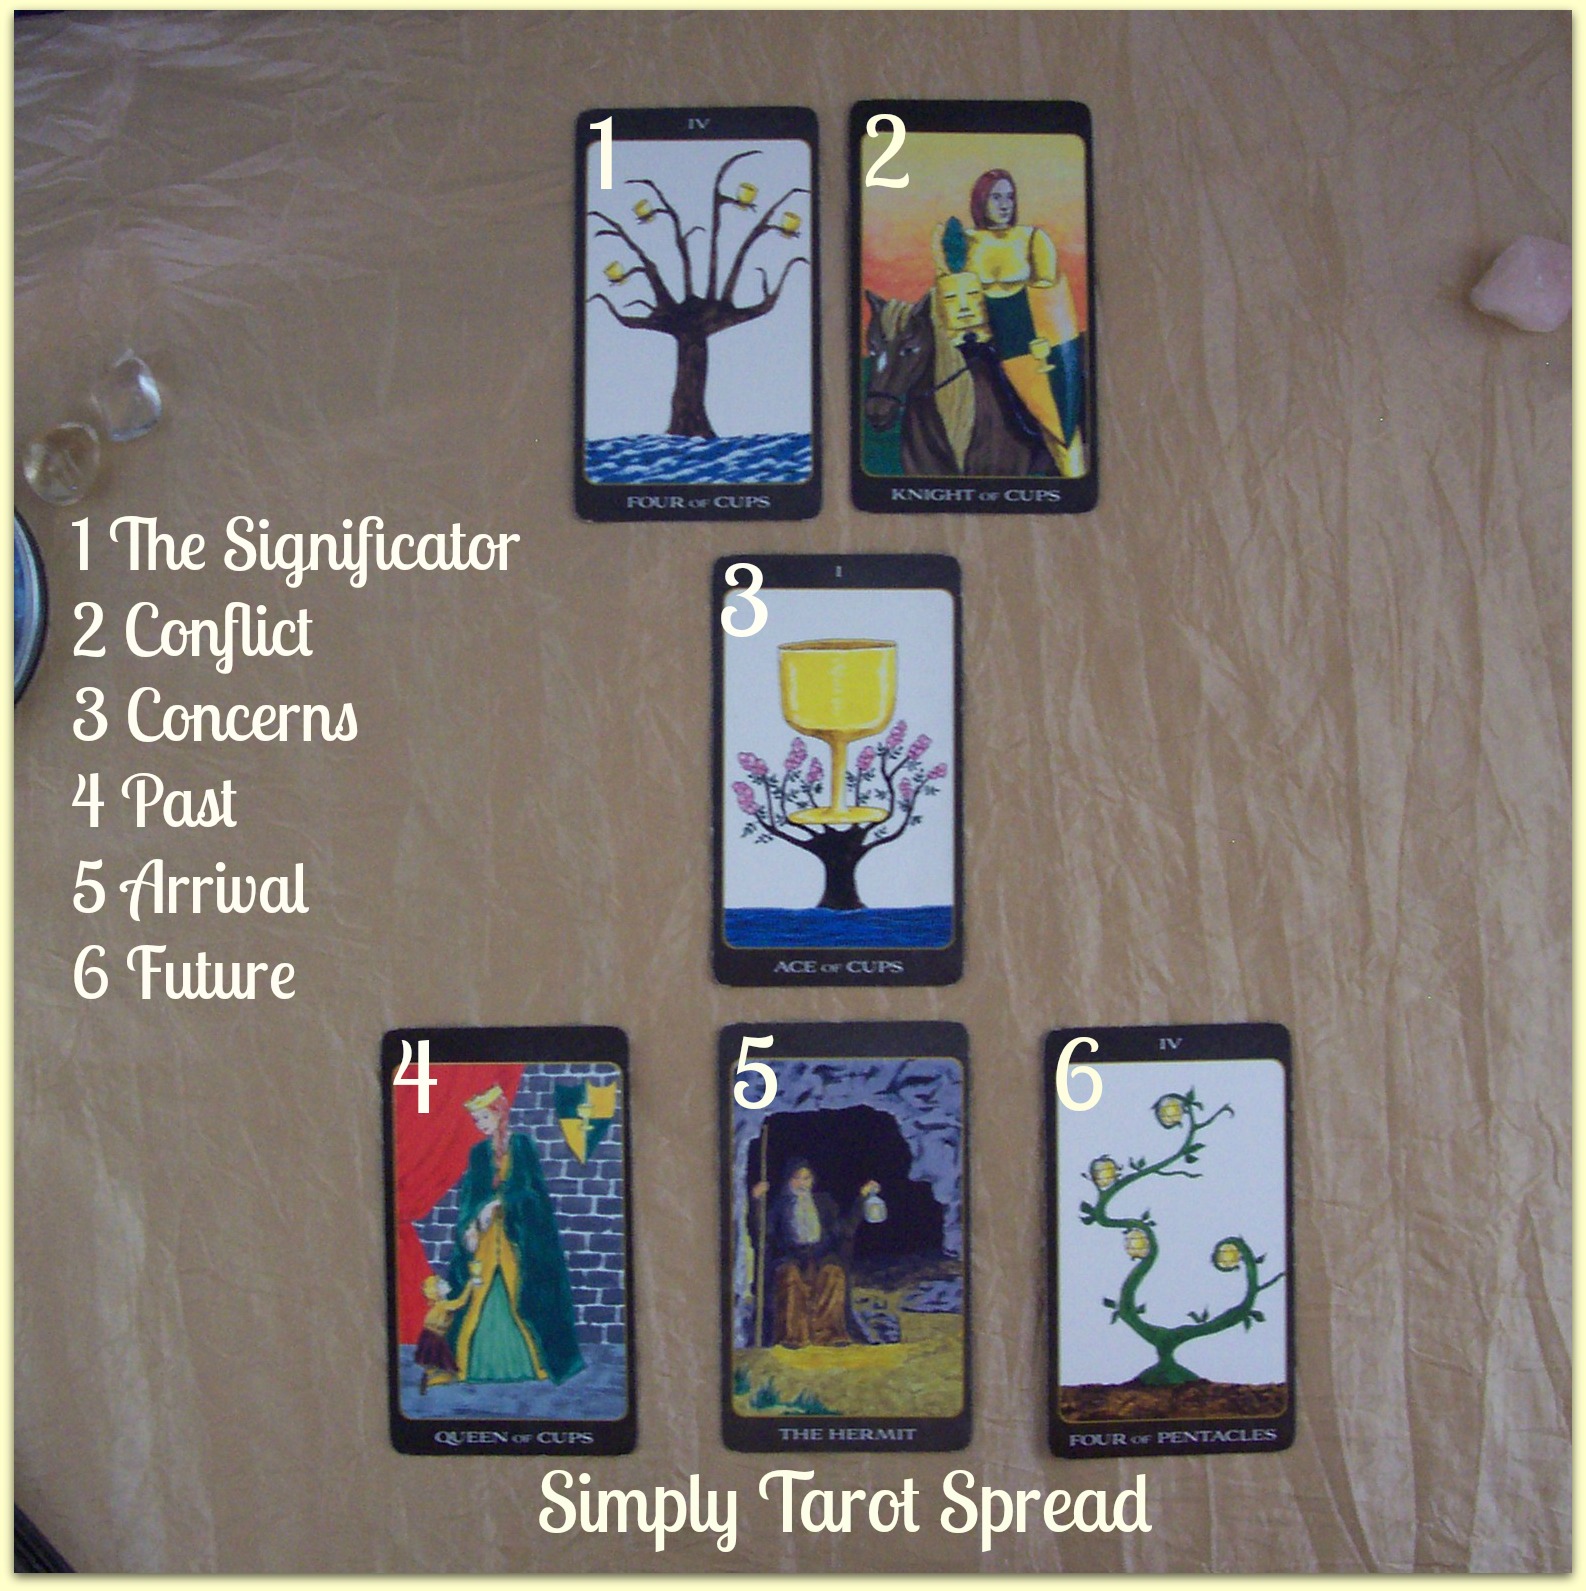 Simply spread - Simply Tarot